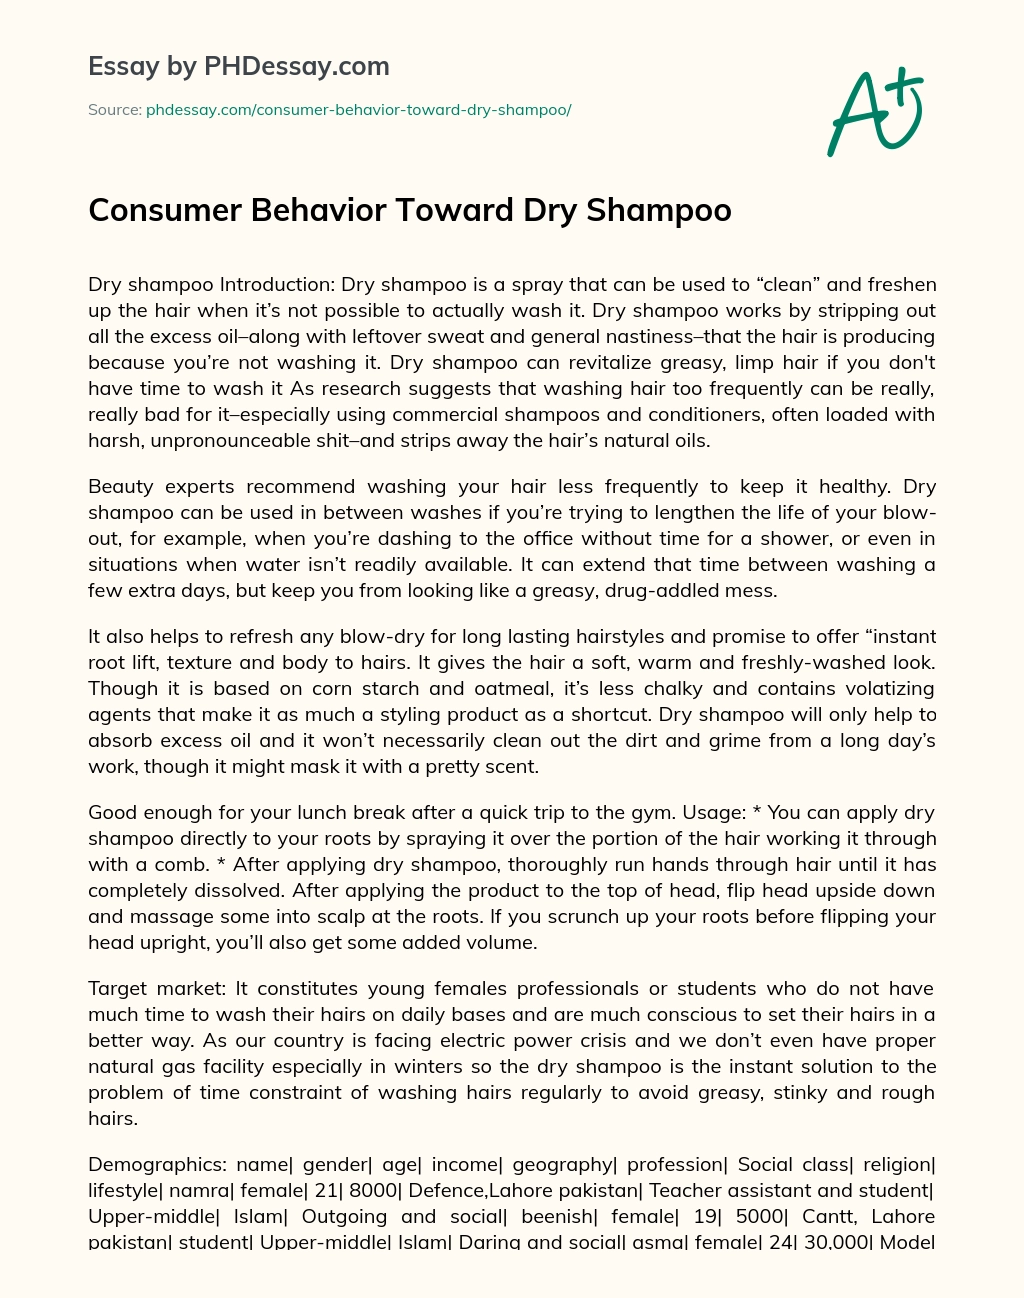 Consumer Behavior Toward Dry Shampoo essay